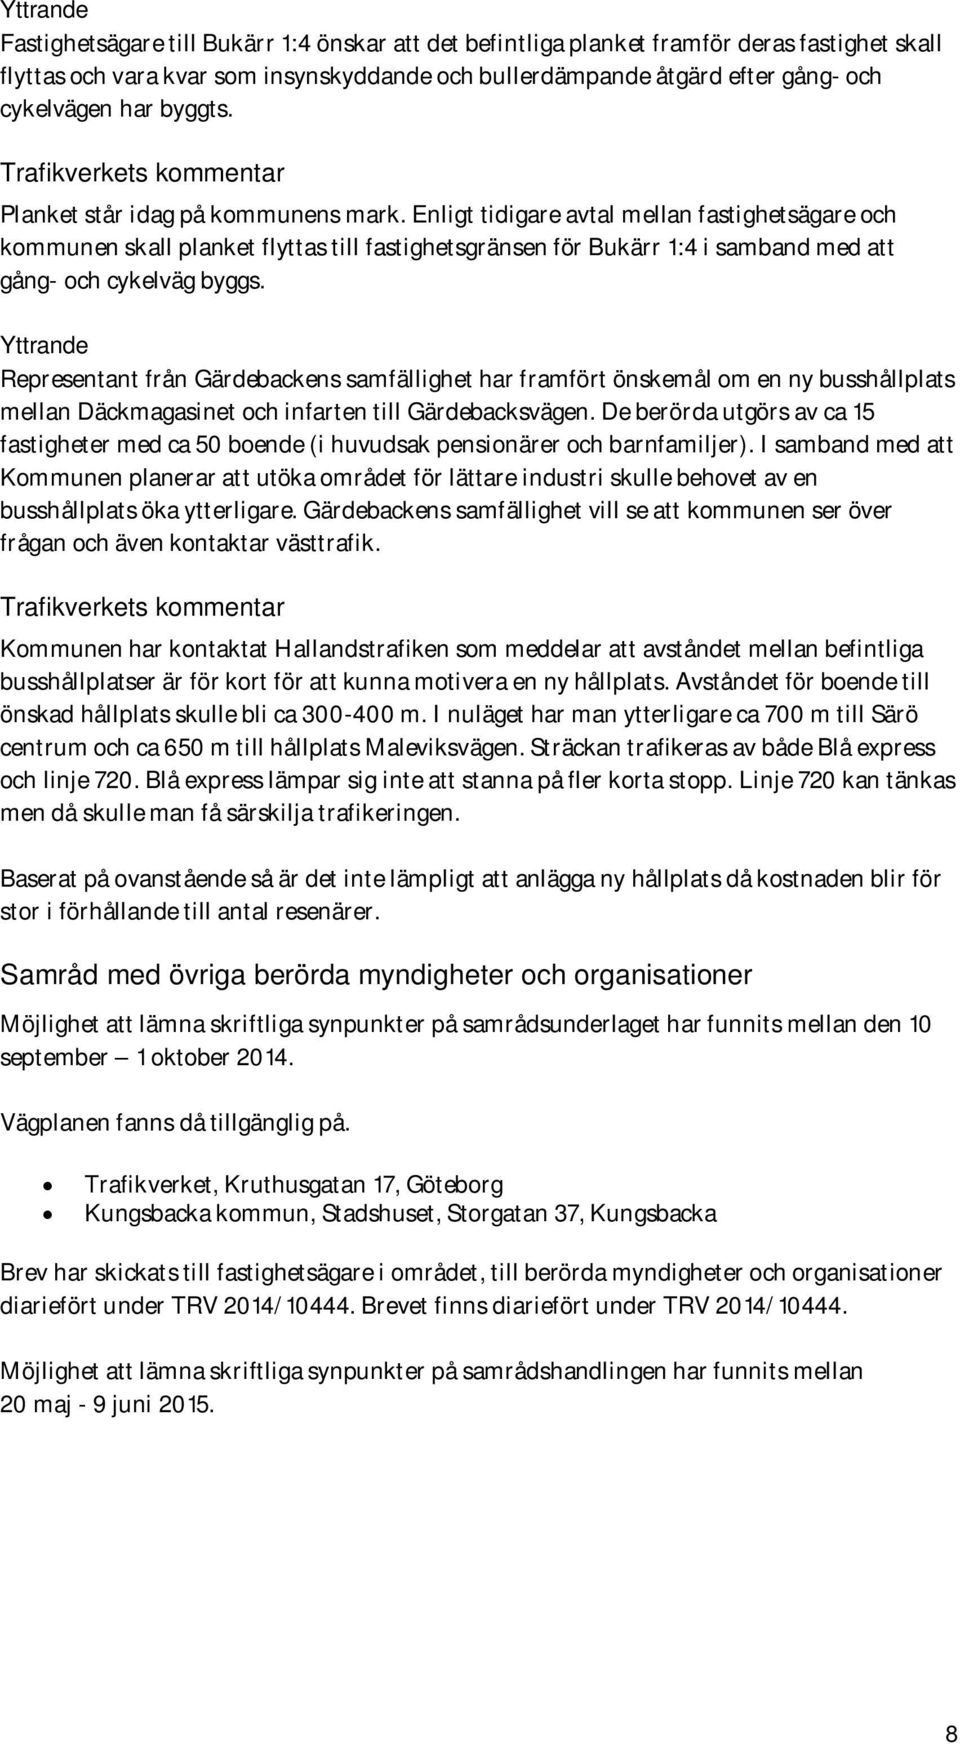 Enligt tidigare avtal mellan fastighetsägare och kommunen skall planket flyttas till fastighetsgränsen för Bukärr 1:4 i samband med att gång- och cykelväg byggs.